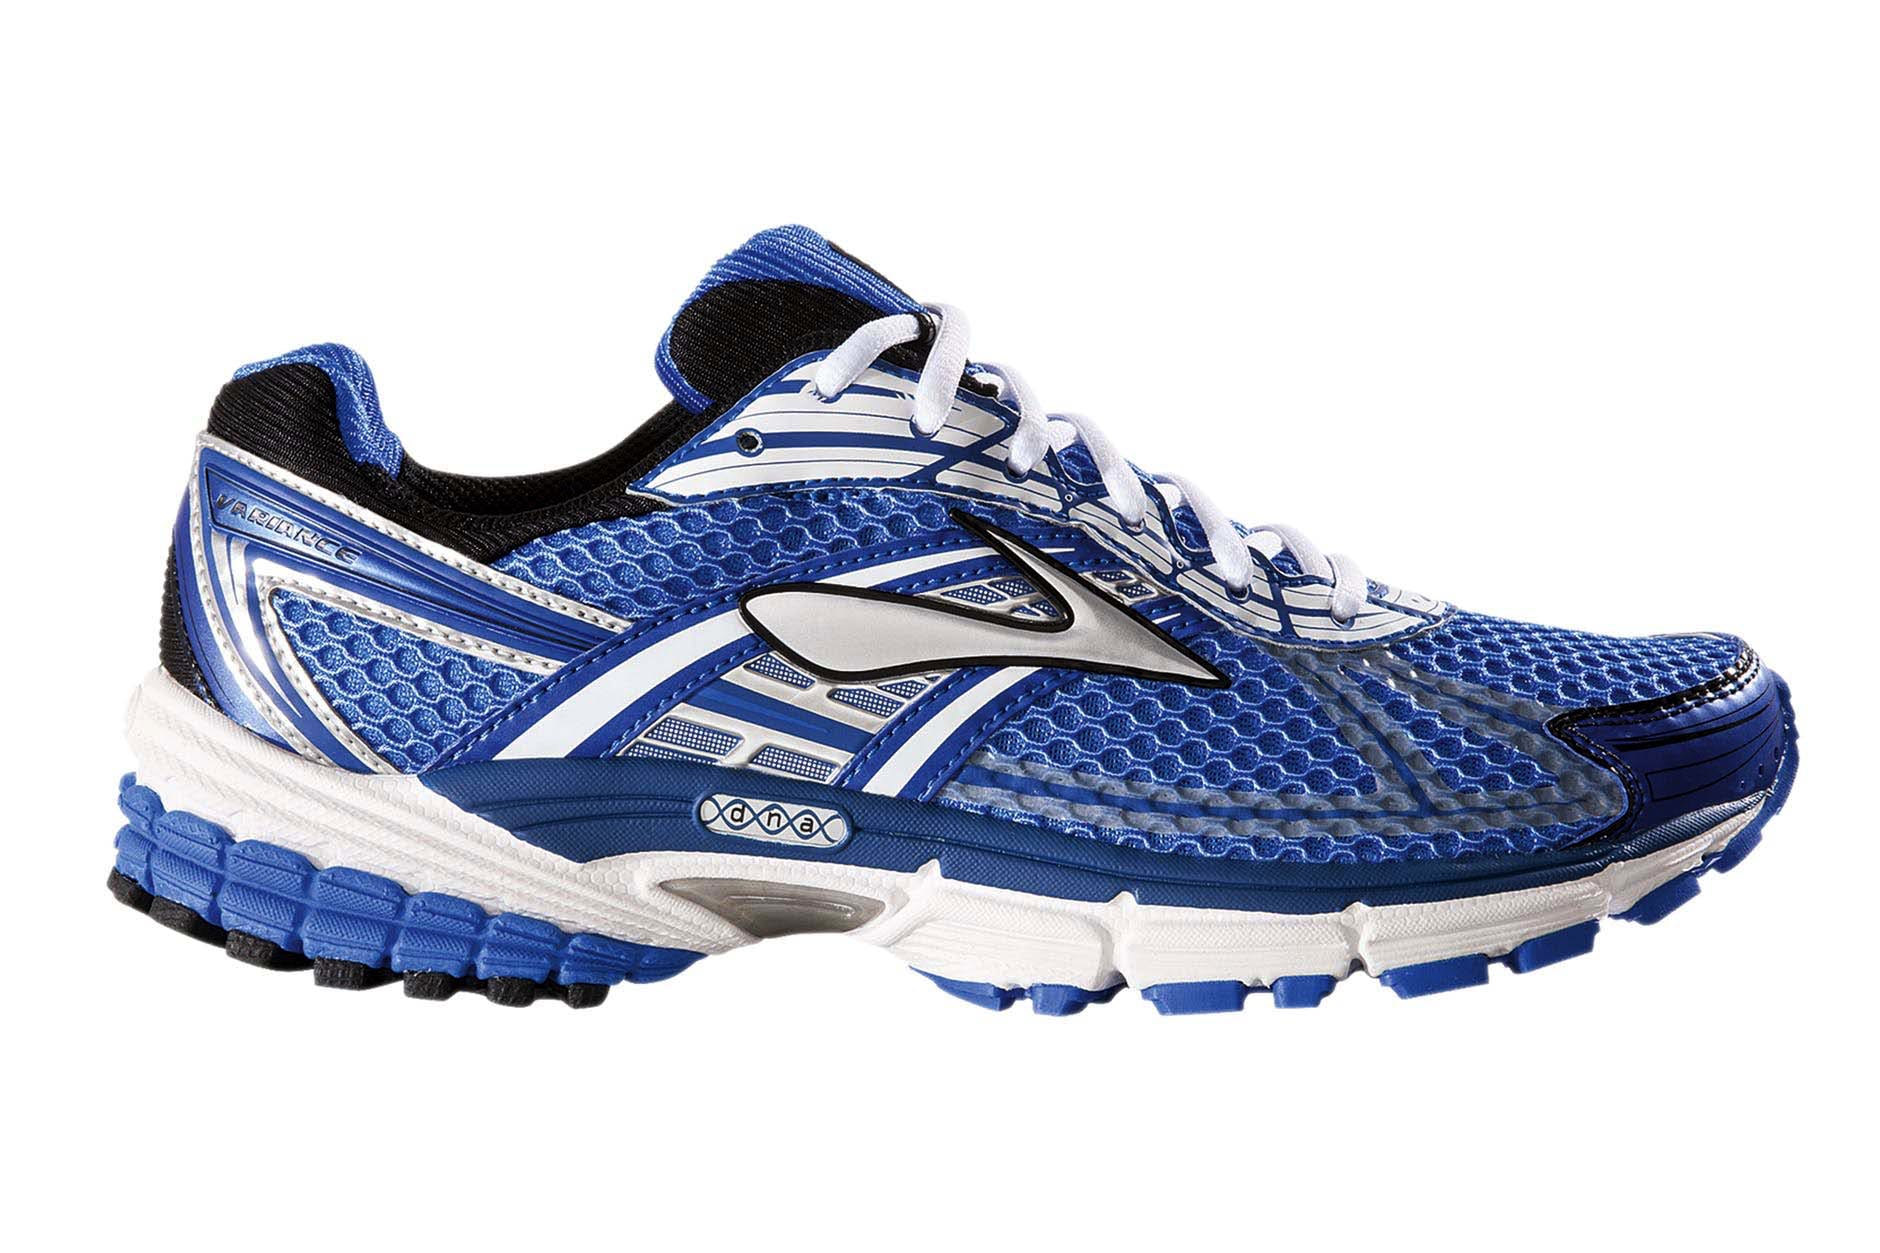 Shoe,Footwear,Running shoe,Outdoor shoe,Athletic shoe,Walking shoe,Cross training shoe,Product,Cobalt blue,Blue